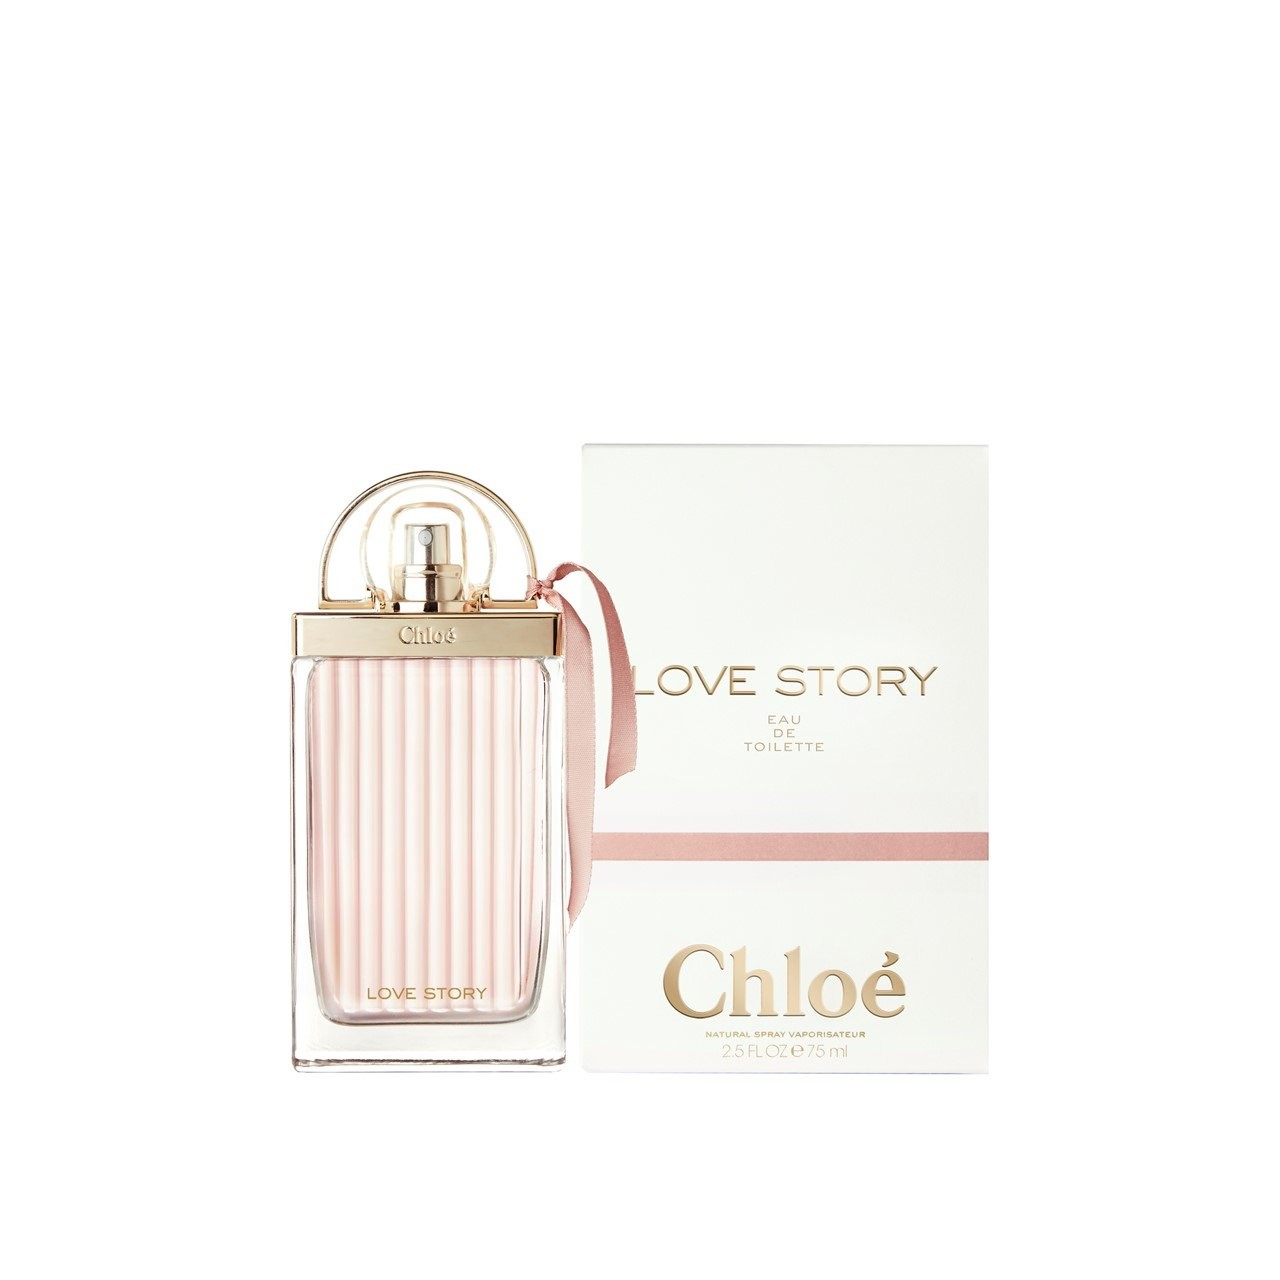 Buy Chloé Love Story Eau USA Toilette de ·